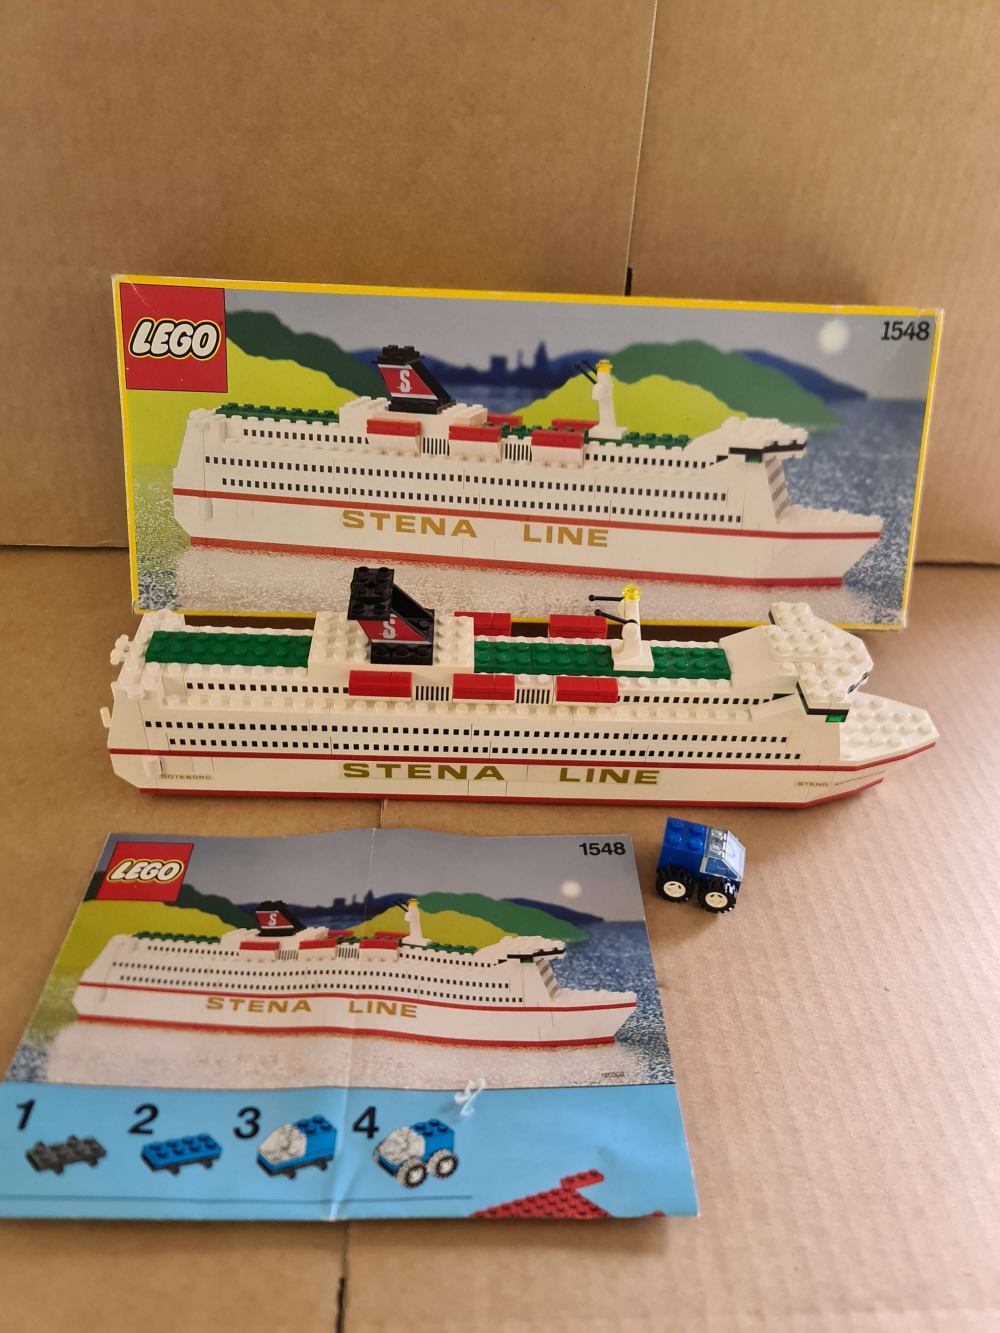 Sett 1548 fra Lego Universal Buildings Sets : Ferries serien.
Meget pent sett. 
Komplett med manual og eske.
Nye originale klistremerker akkurat satt på.
